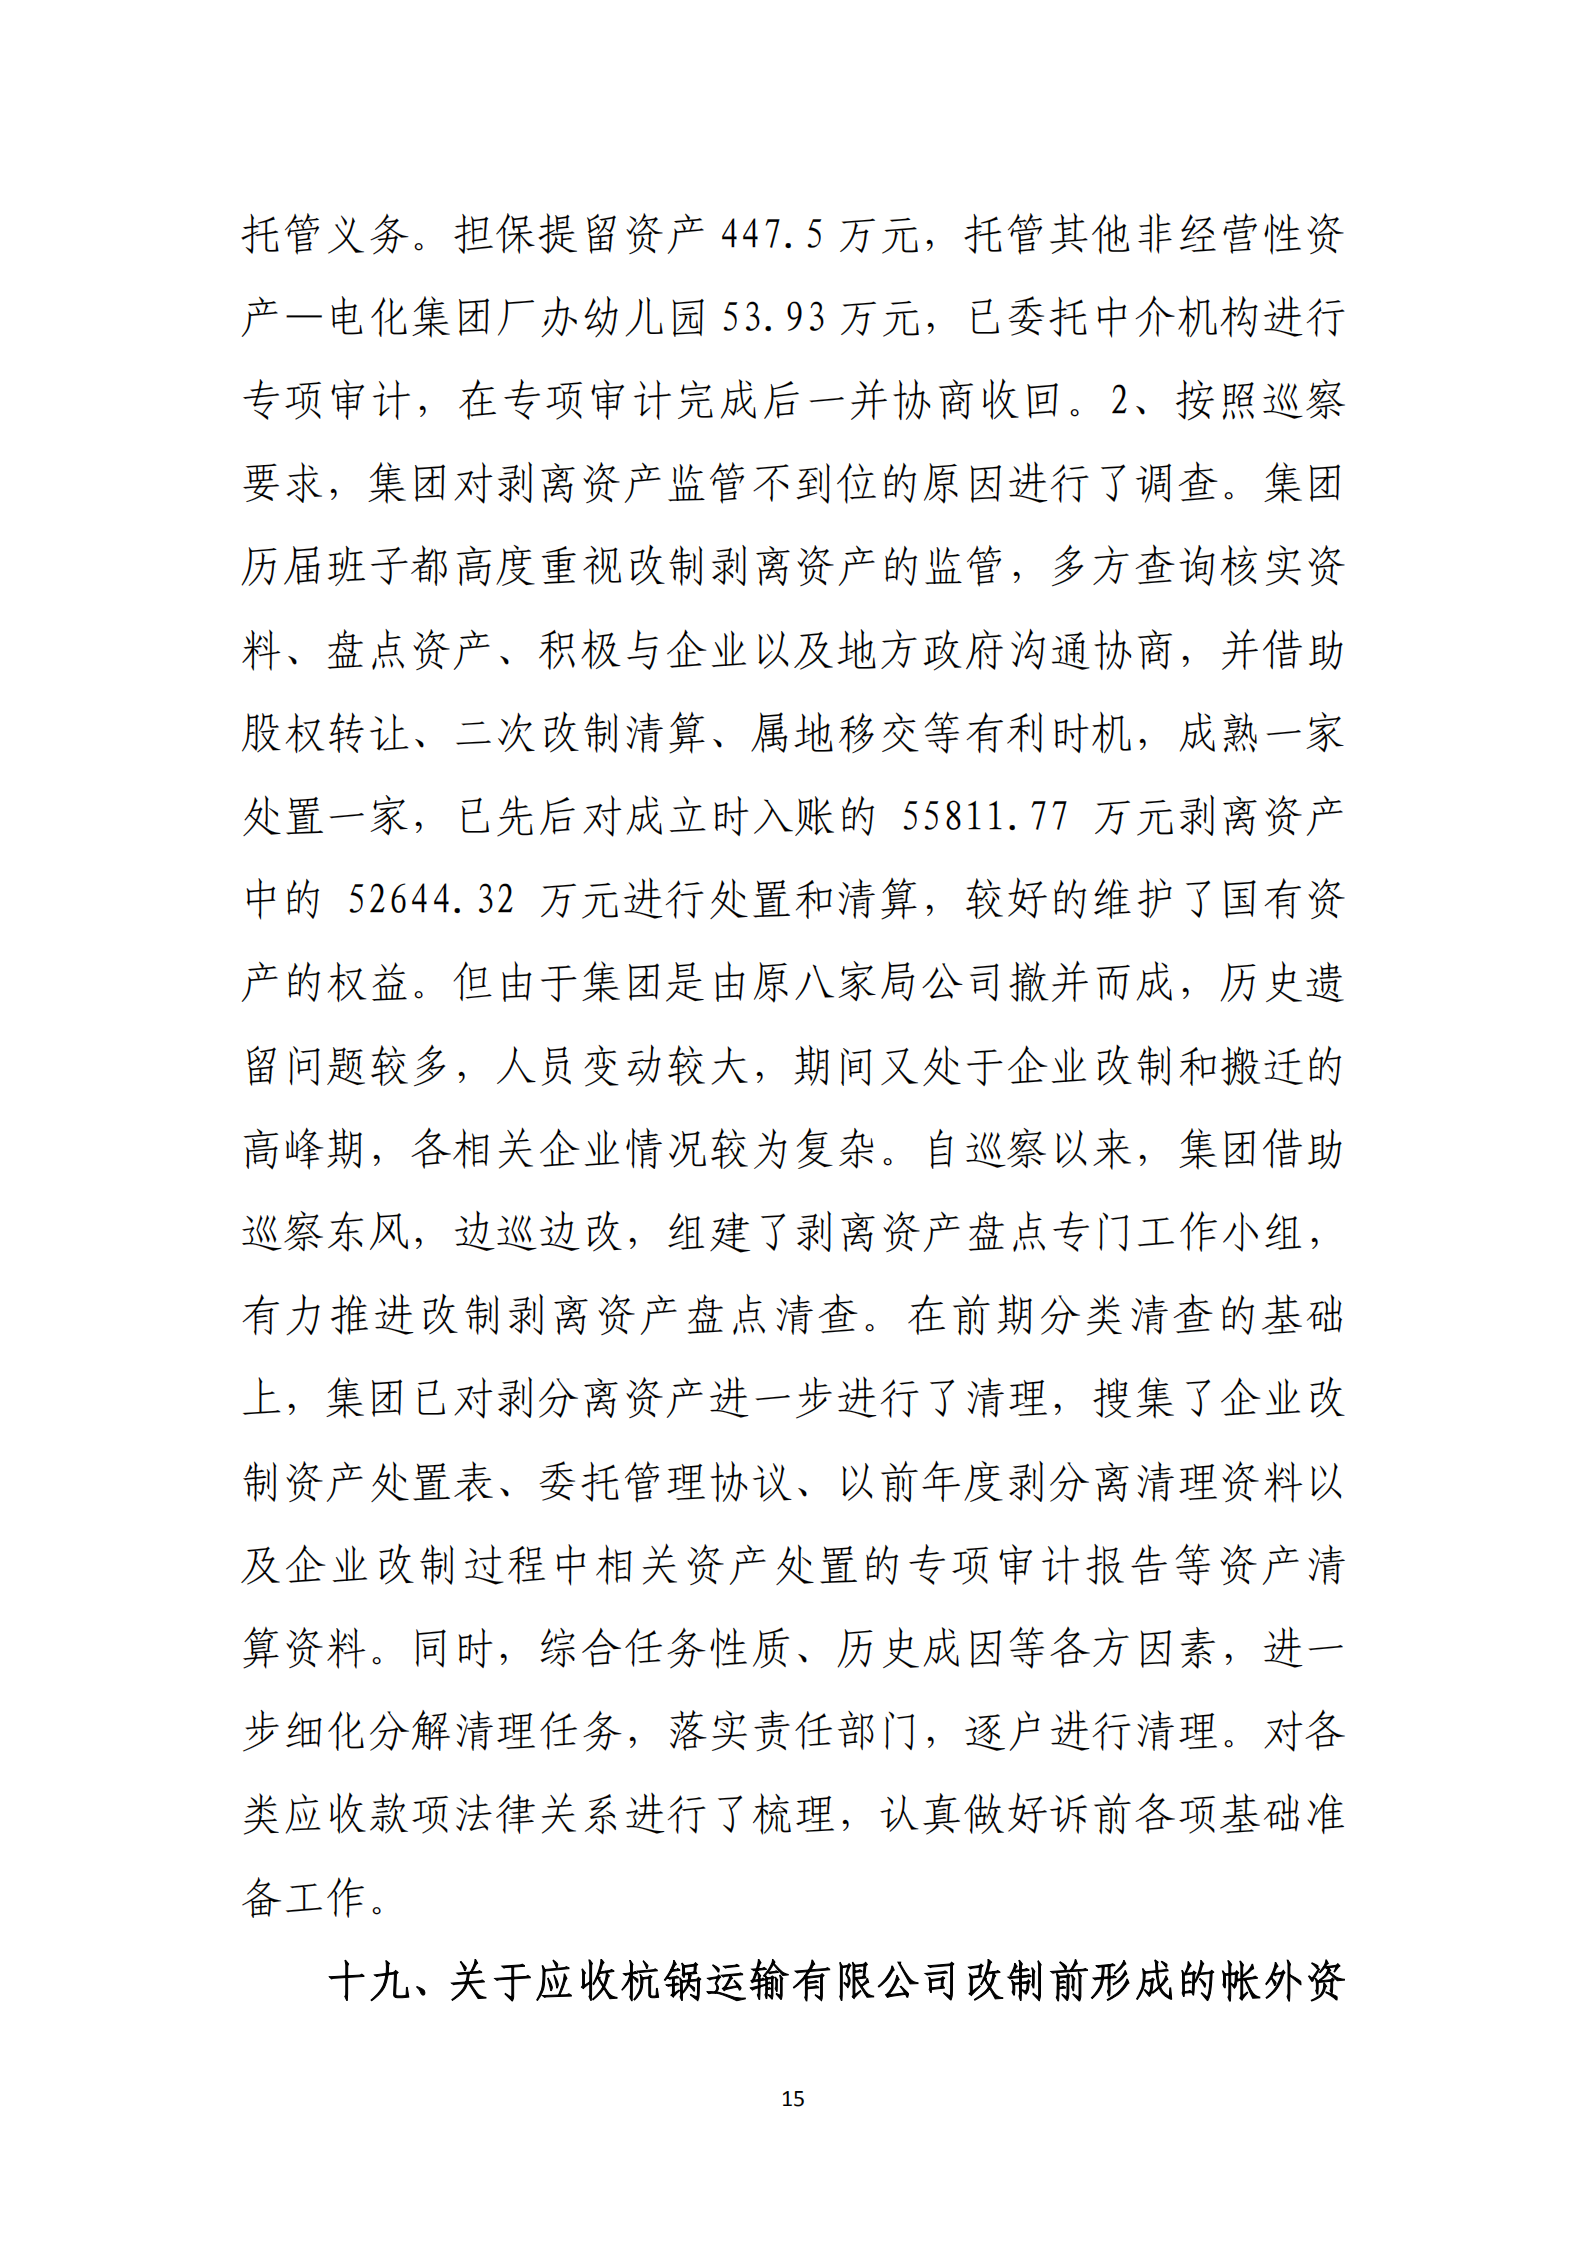 大阳城集团娱乐游戏党委关于巡察整改情况的通报_14.png